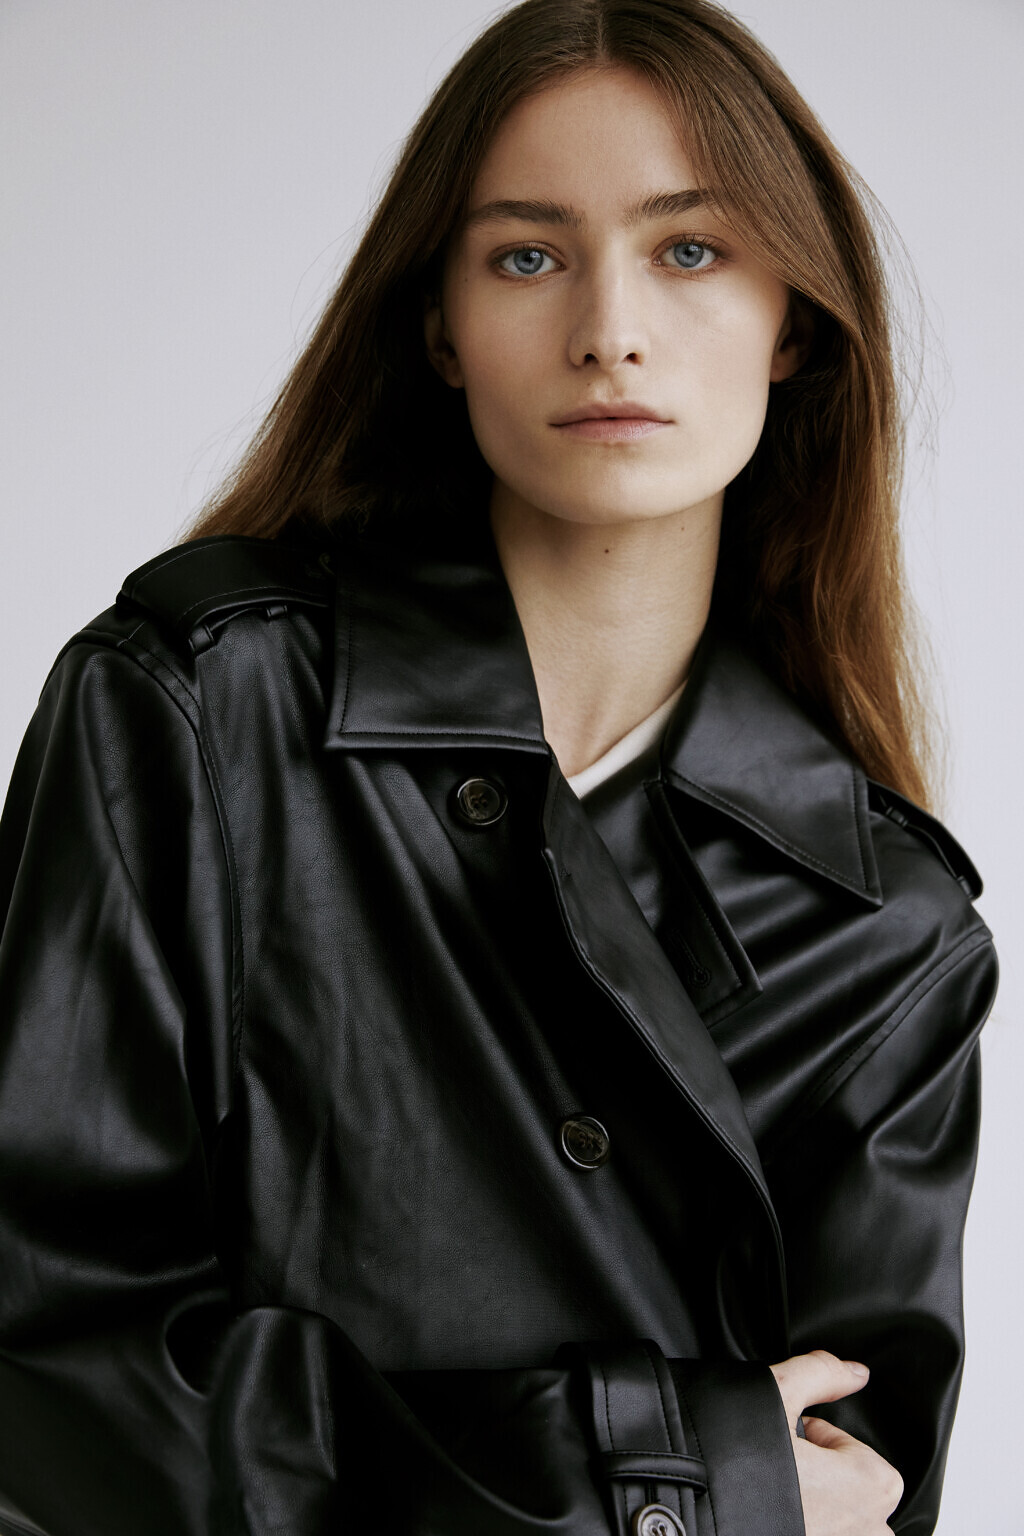 Caroline Parzentny - Unique Models